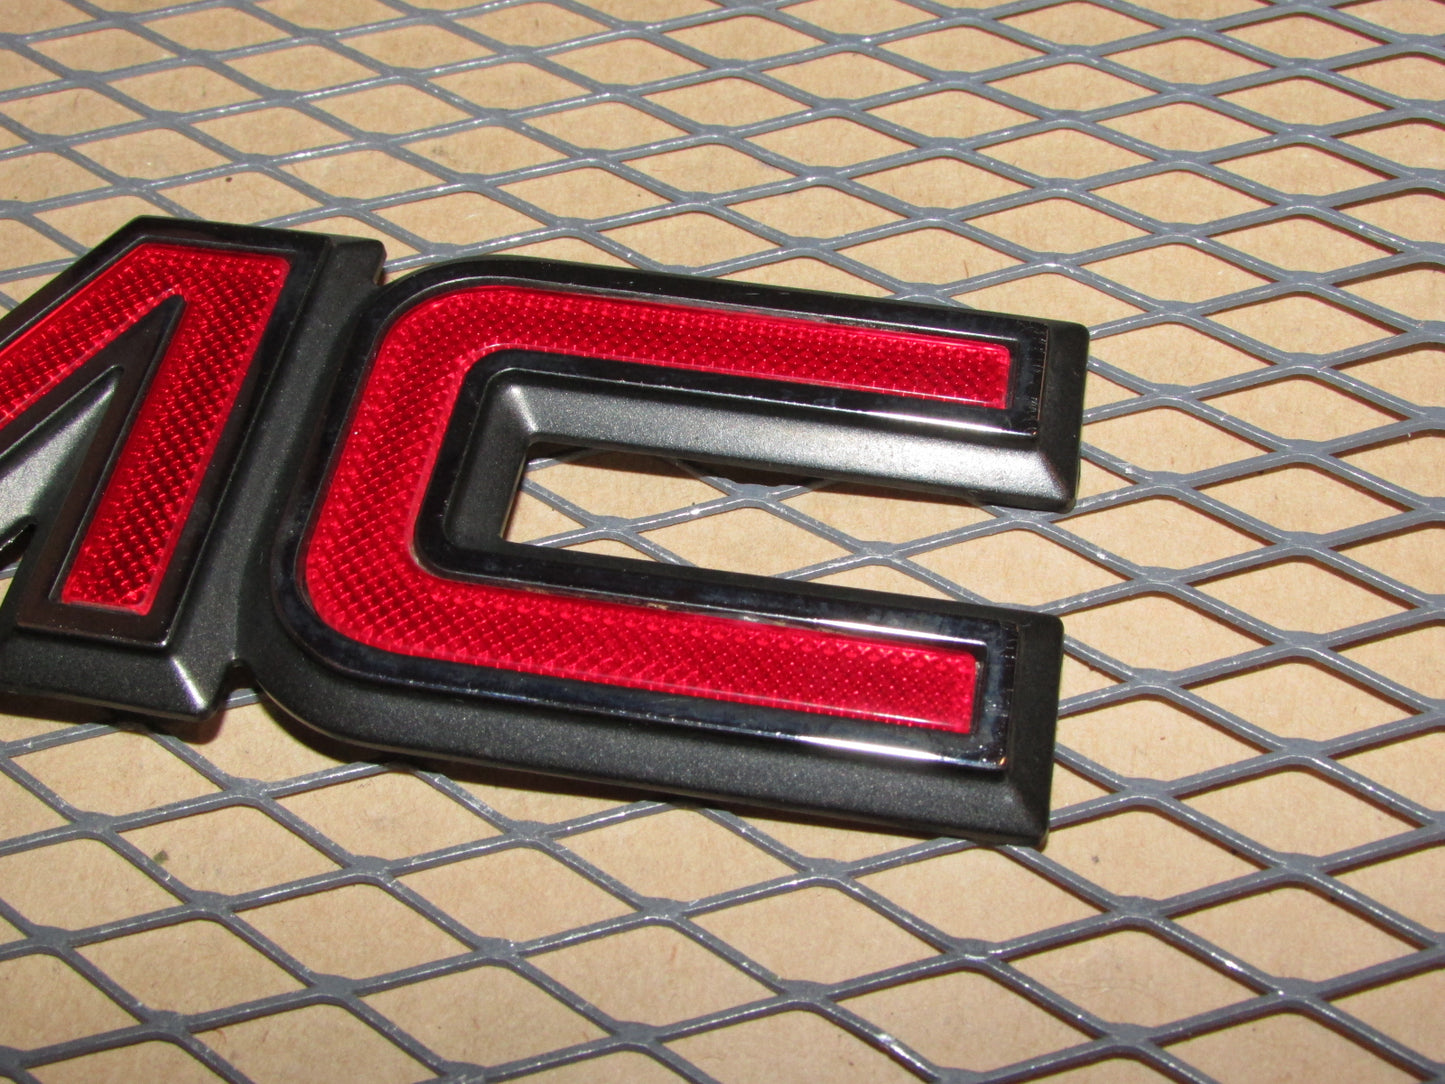 99 00 01 02 GMC Sierra OEM Rear Tailgate GMC Emblem Badge